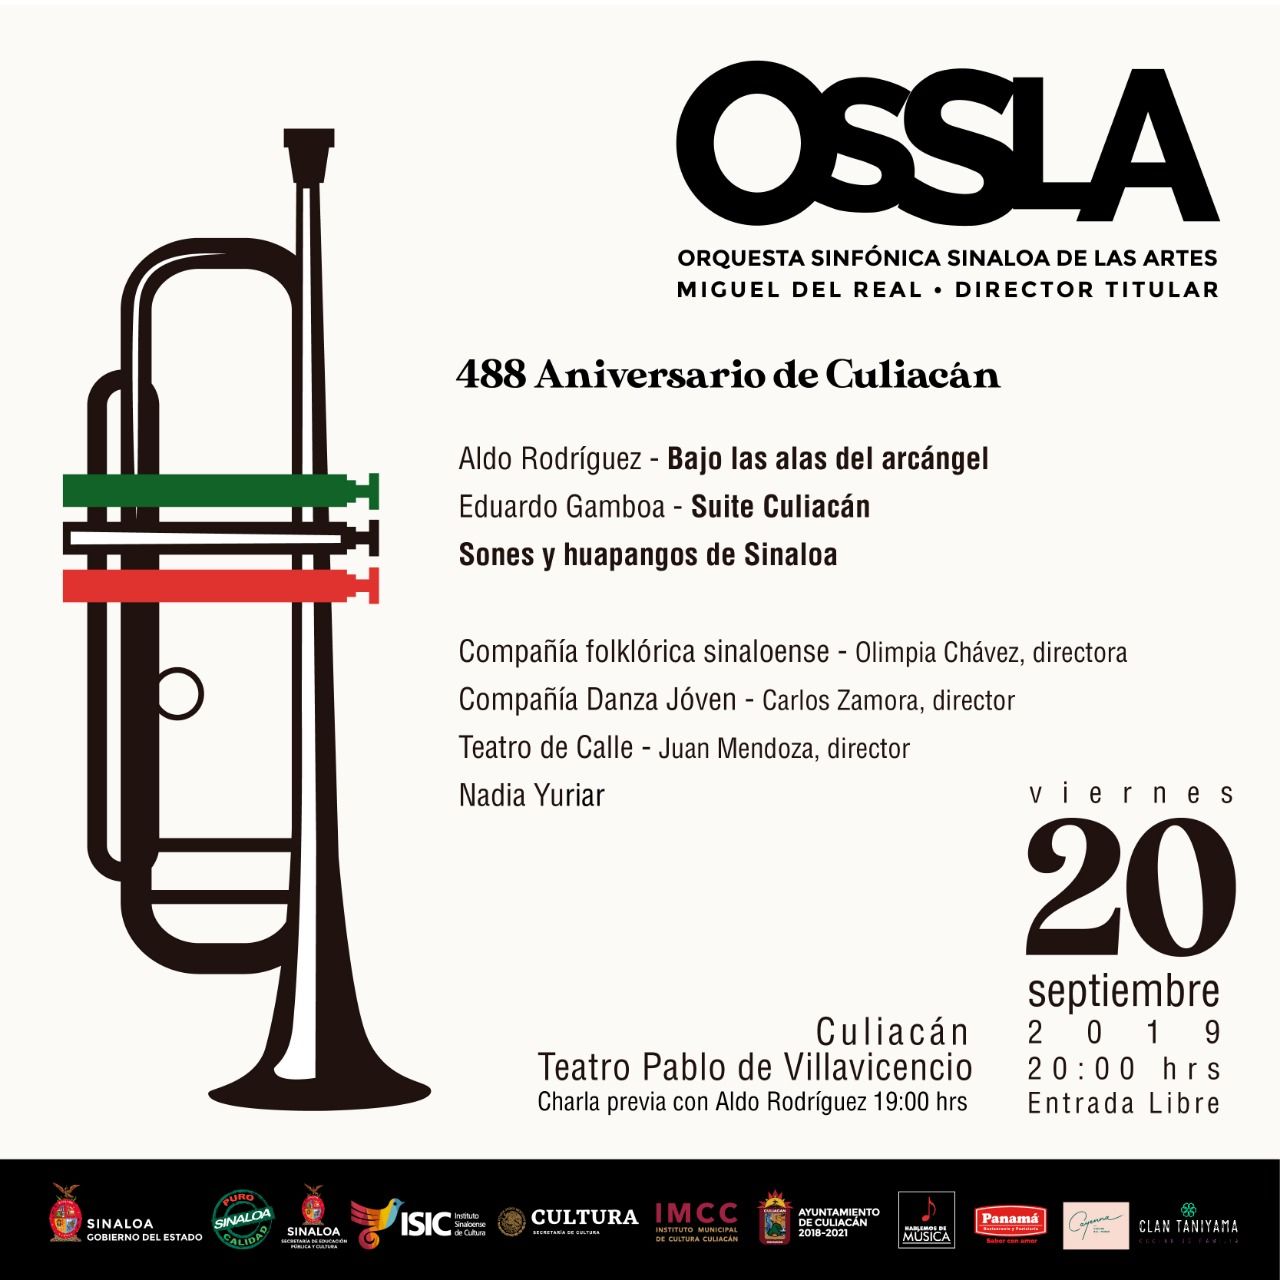 El viernes 20, concierto de la OSSLA inaugura los festejos de Culiacán